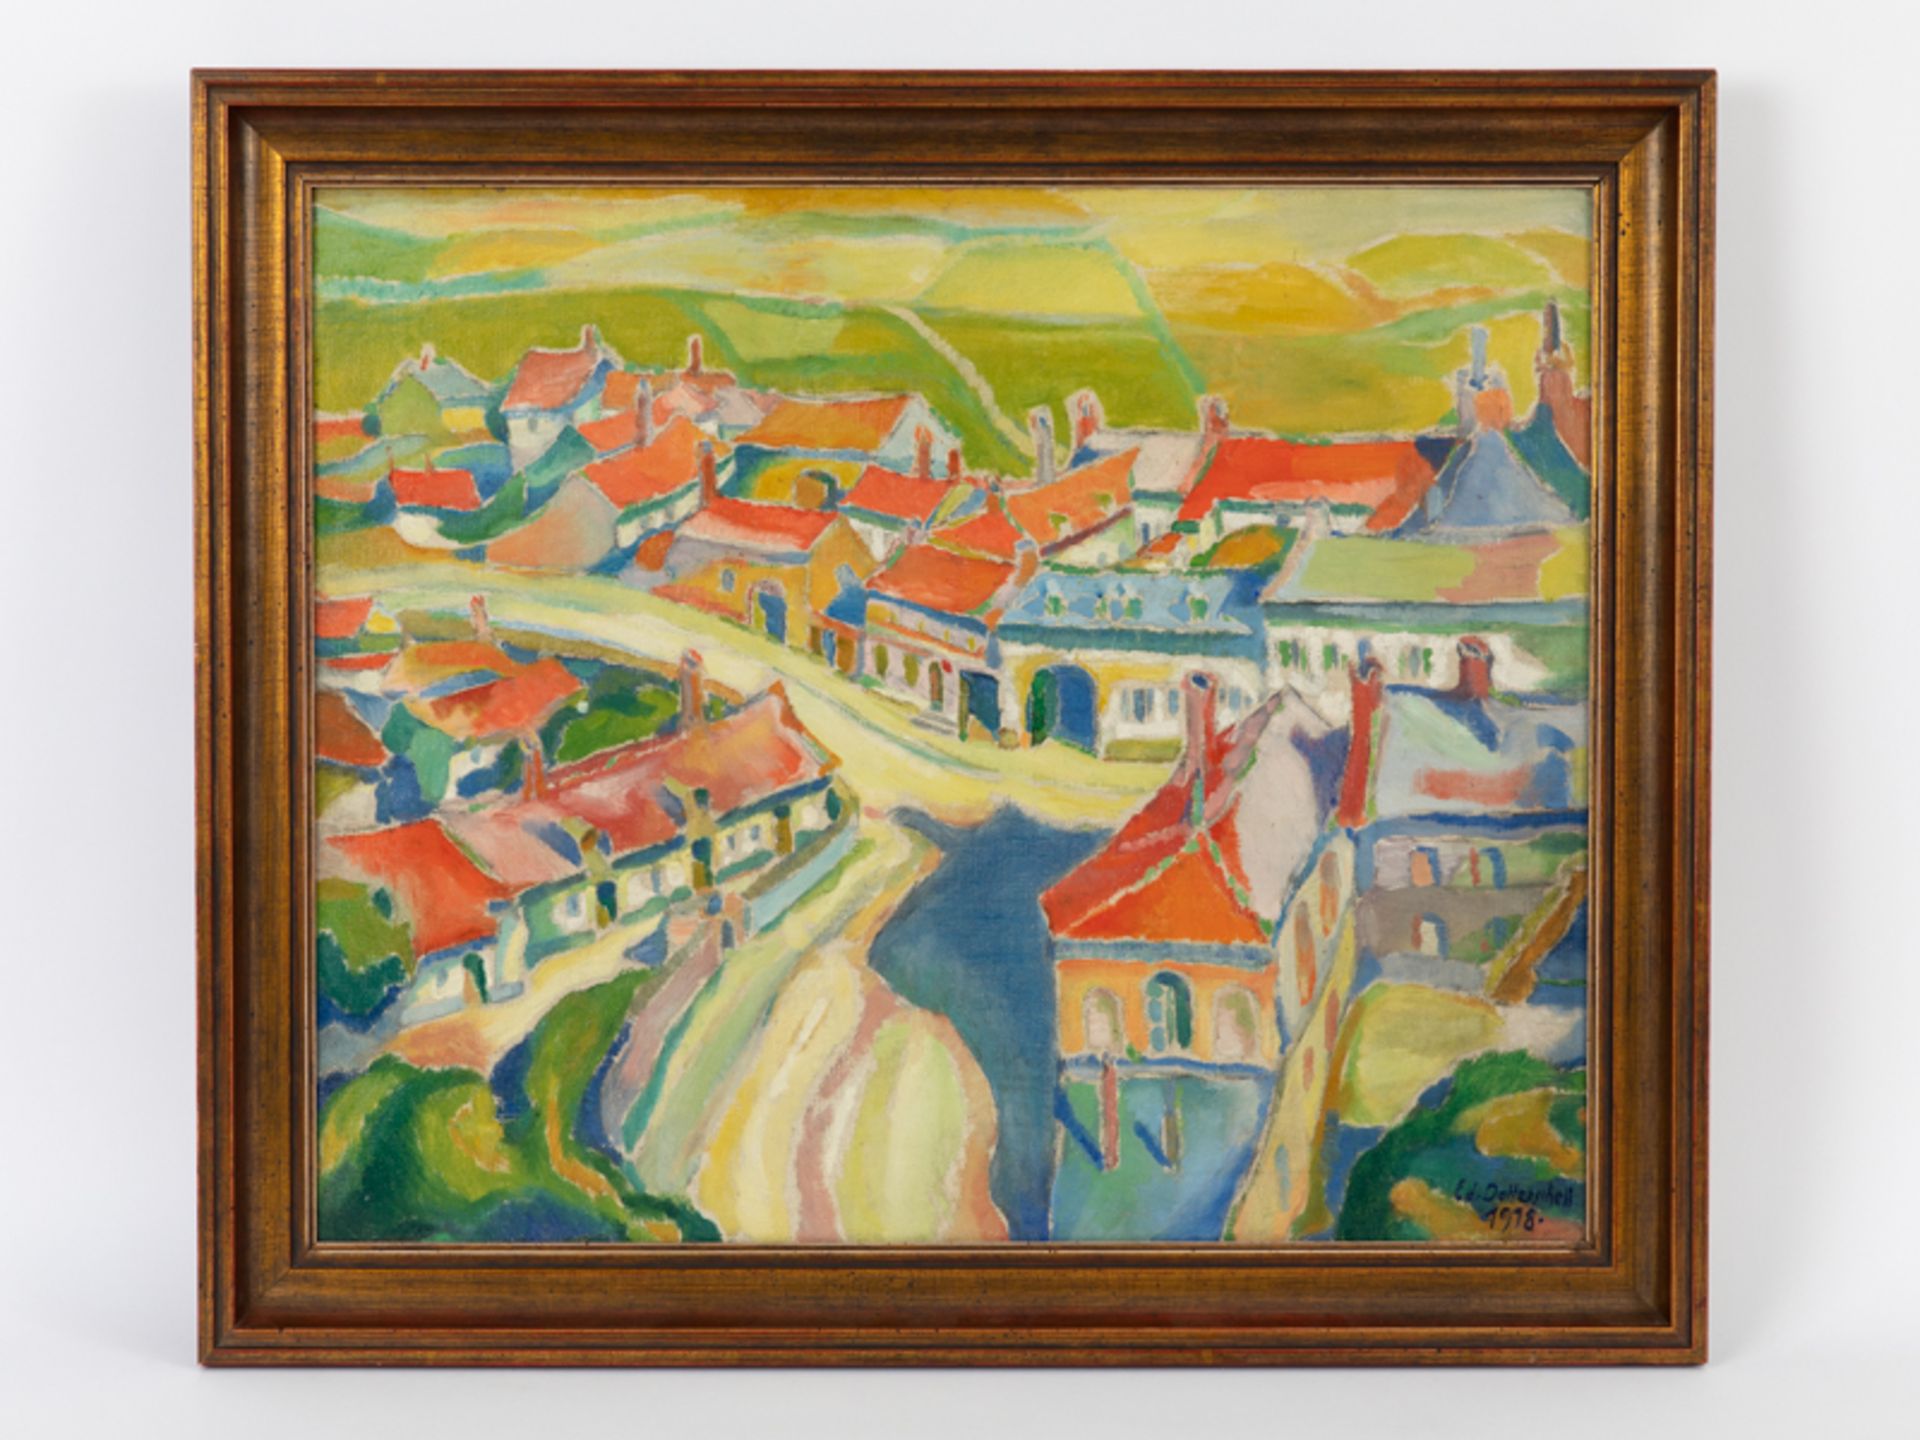 Dollerschell, Eduard (1987 - 1948) Öl auf Leinwand; "Das rote Dorf"; Koloristische